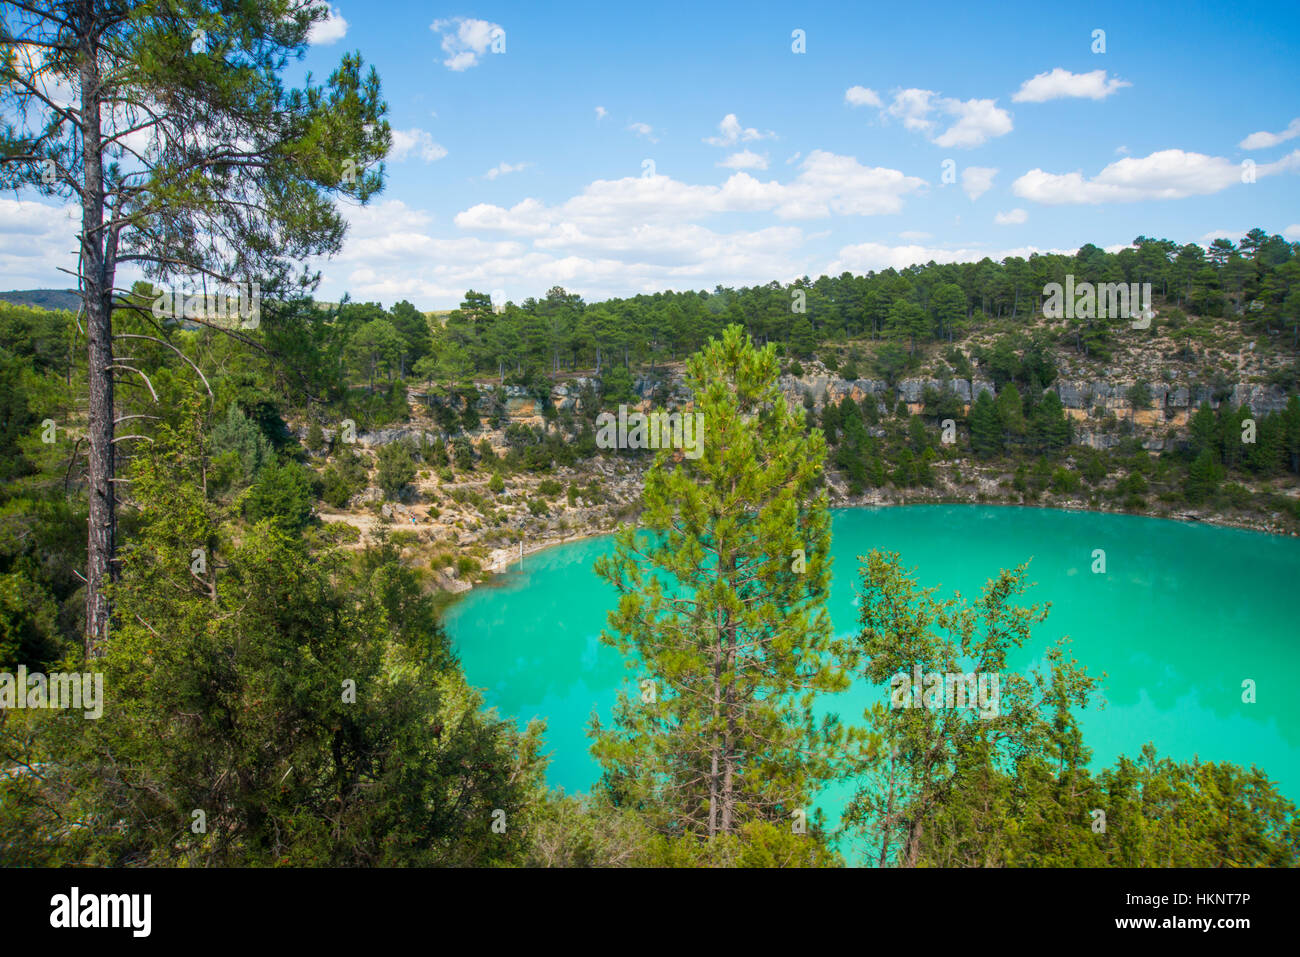 La Gitana lake. Lagunas de Cañada del Hoyo, Cuenca province, Castilla La Mancha, Spain. Stock Photo